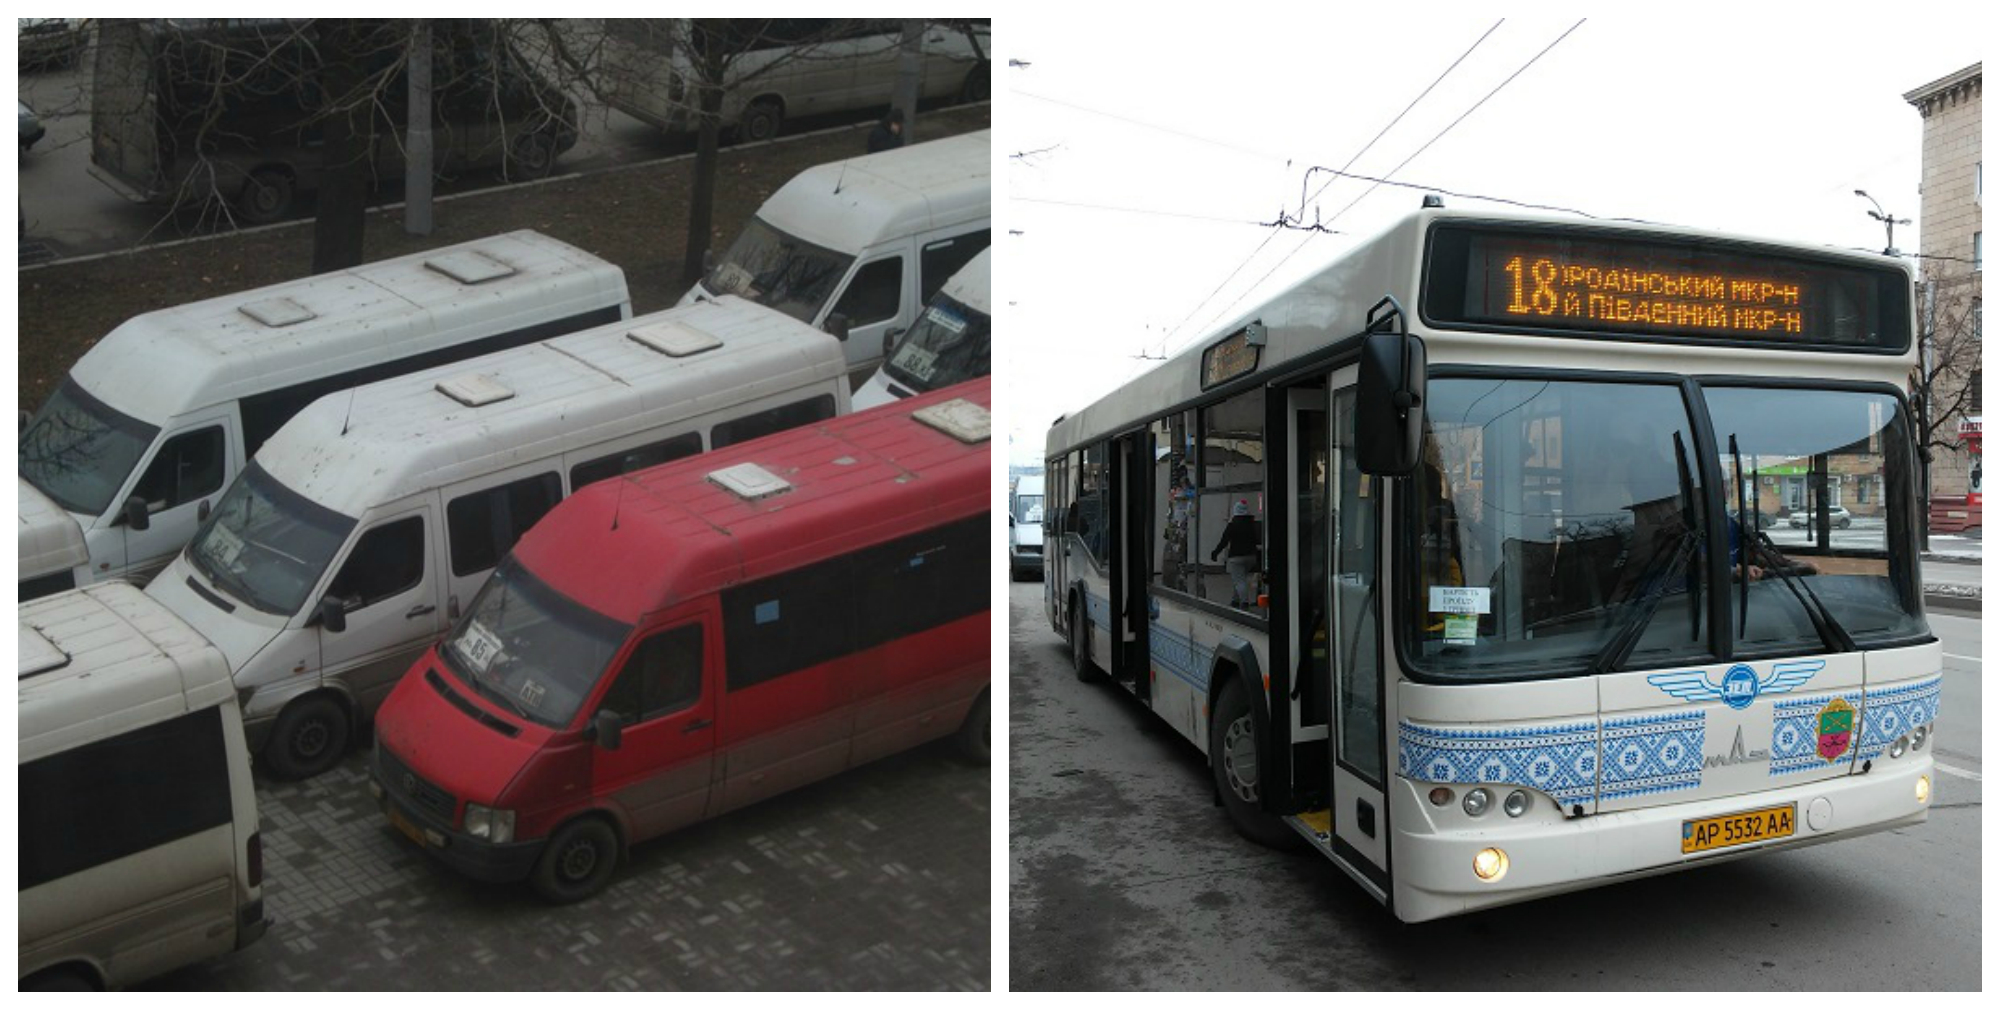 В Запорожье заменят маршрутки на большие вместительные автобусы: мнение горожан